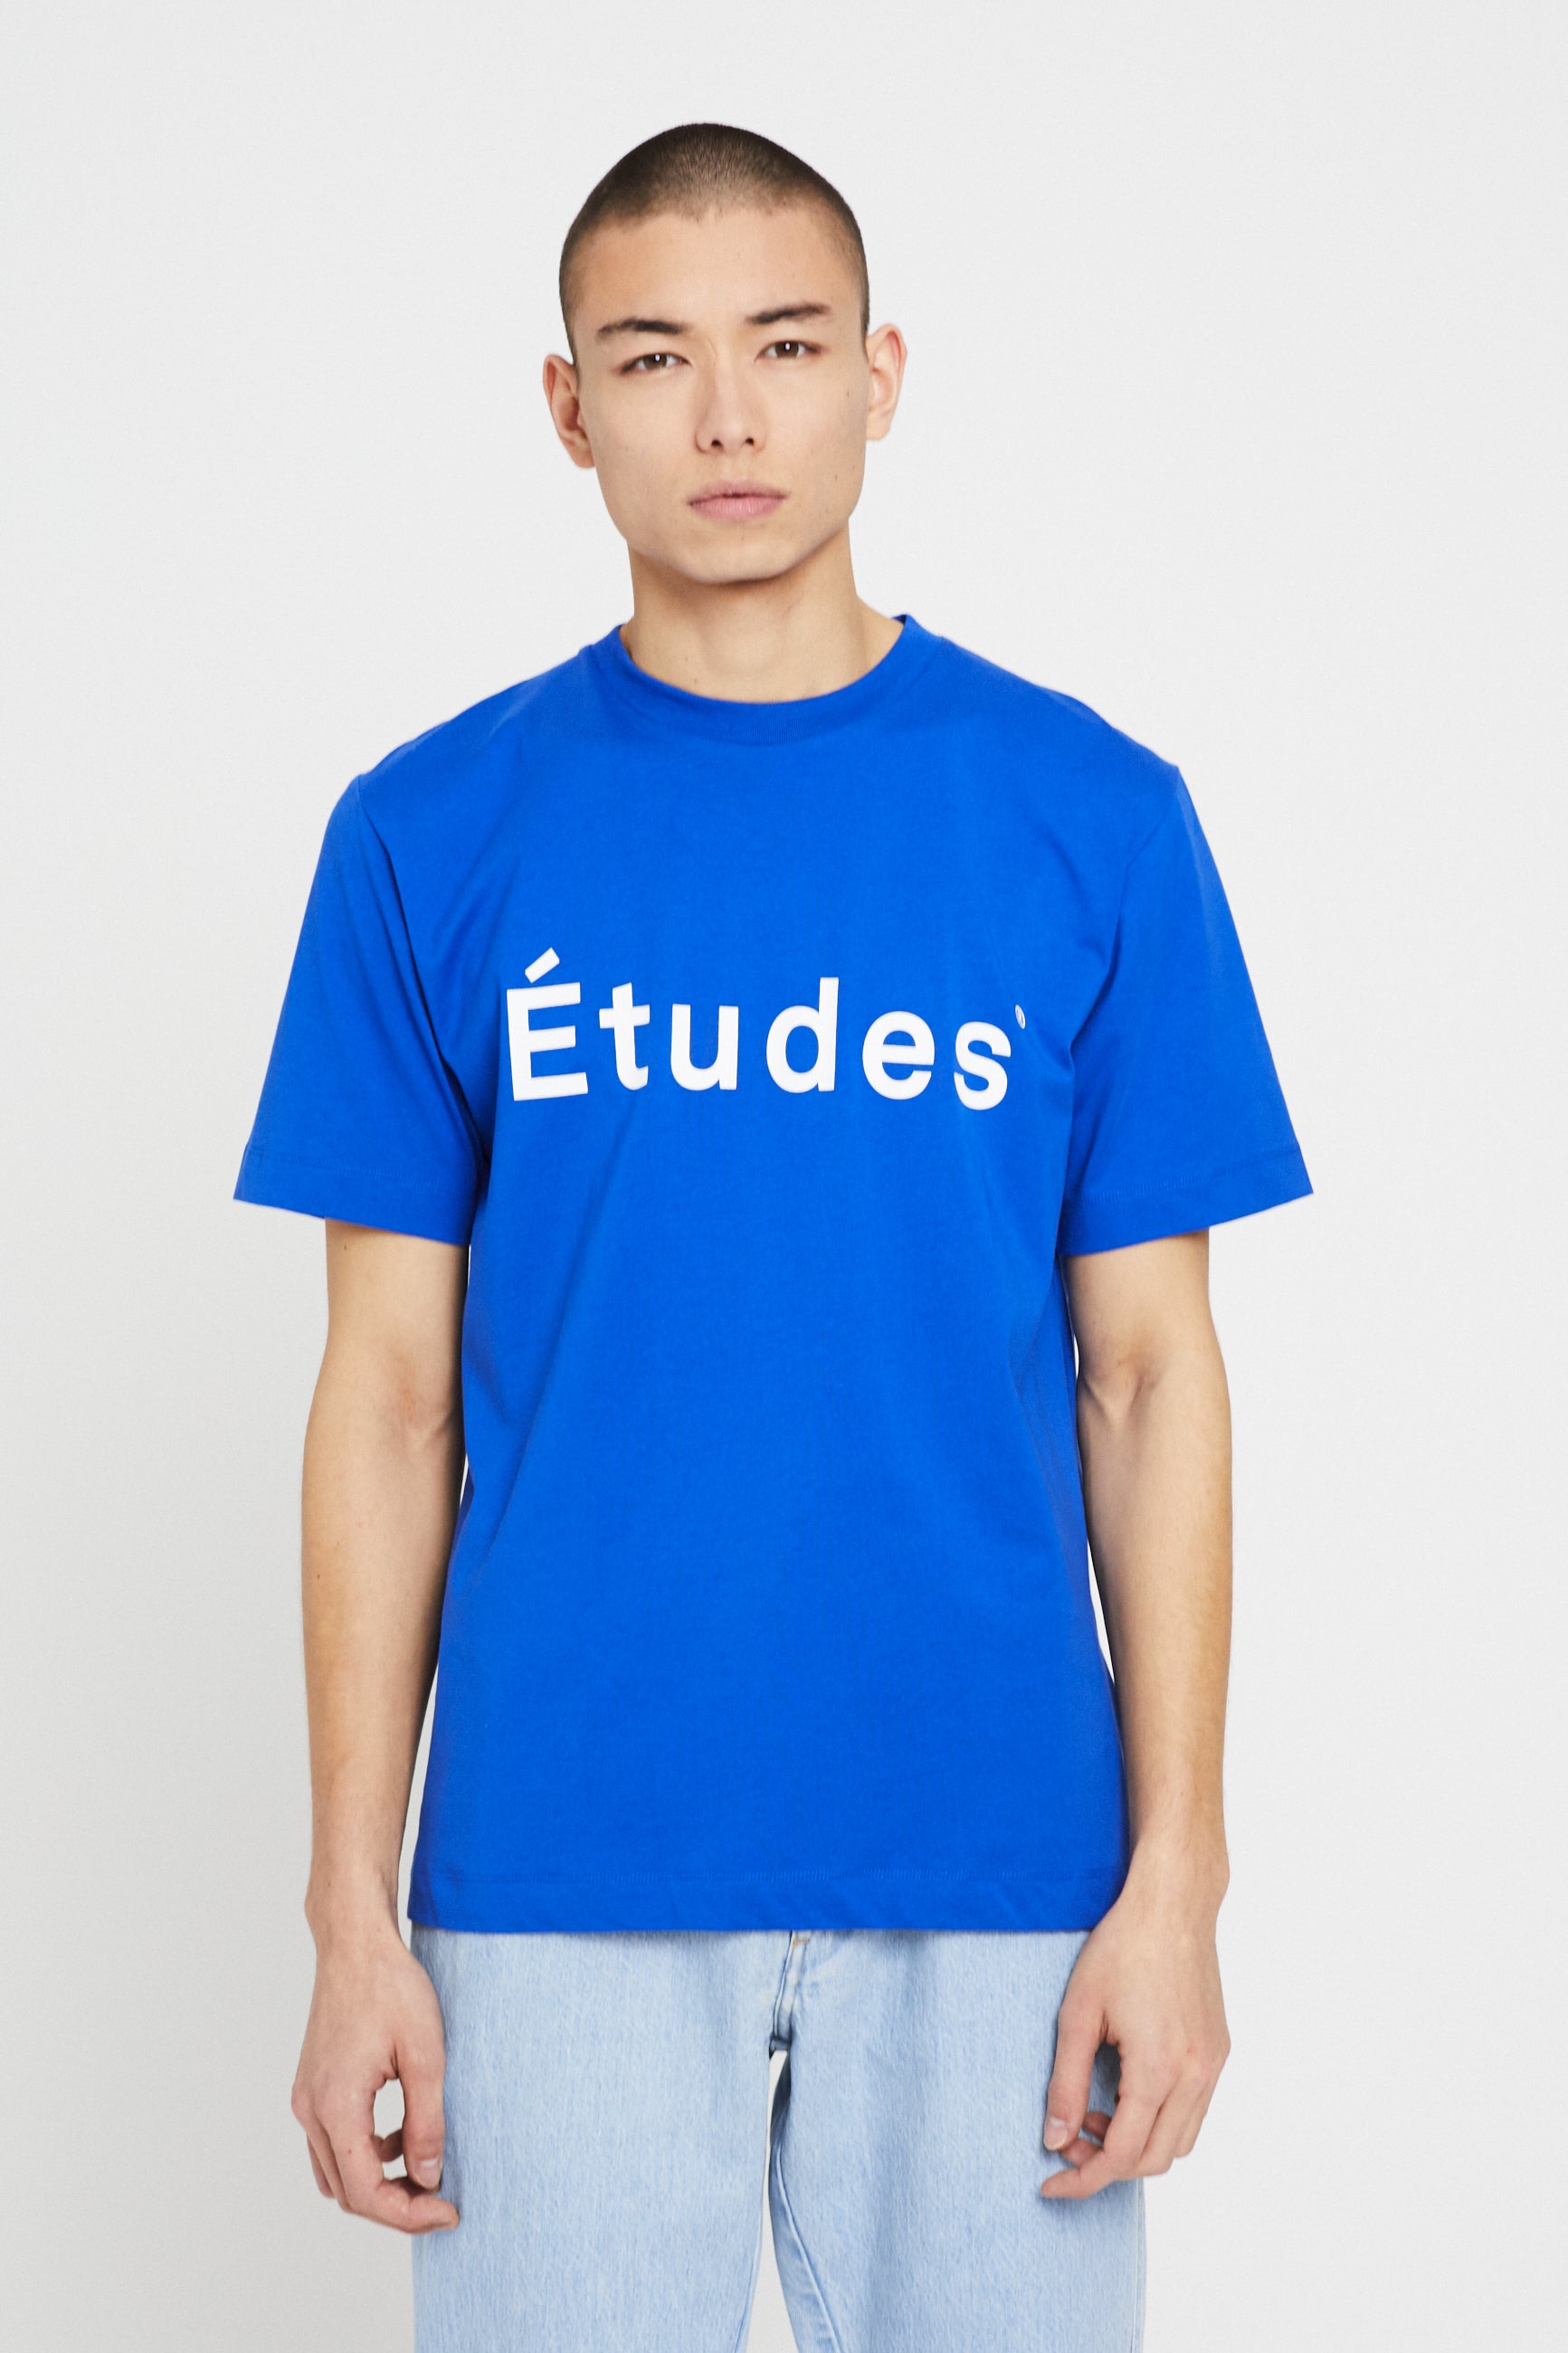 Études WONDER ETUDES BLUE t-shirt 3